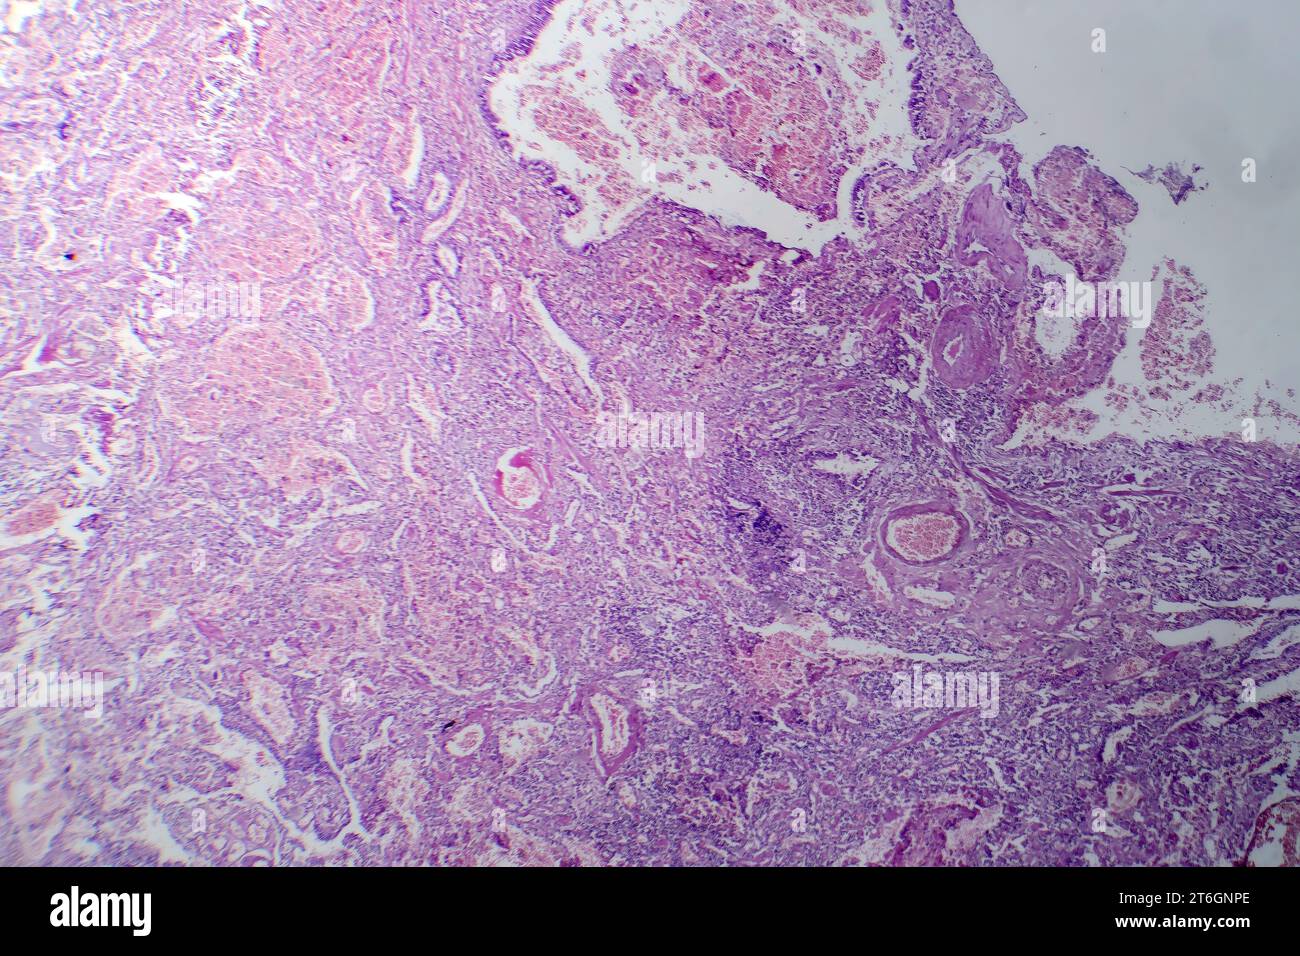 Fotomicrografia della polmonite virale, rivelando infiammazione e danno cellulare causato da un'infezione respiratoria virale. Foto Stock